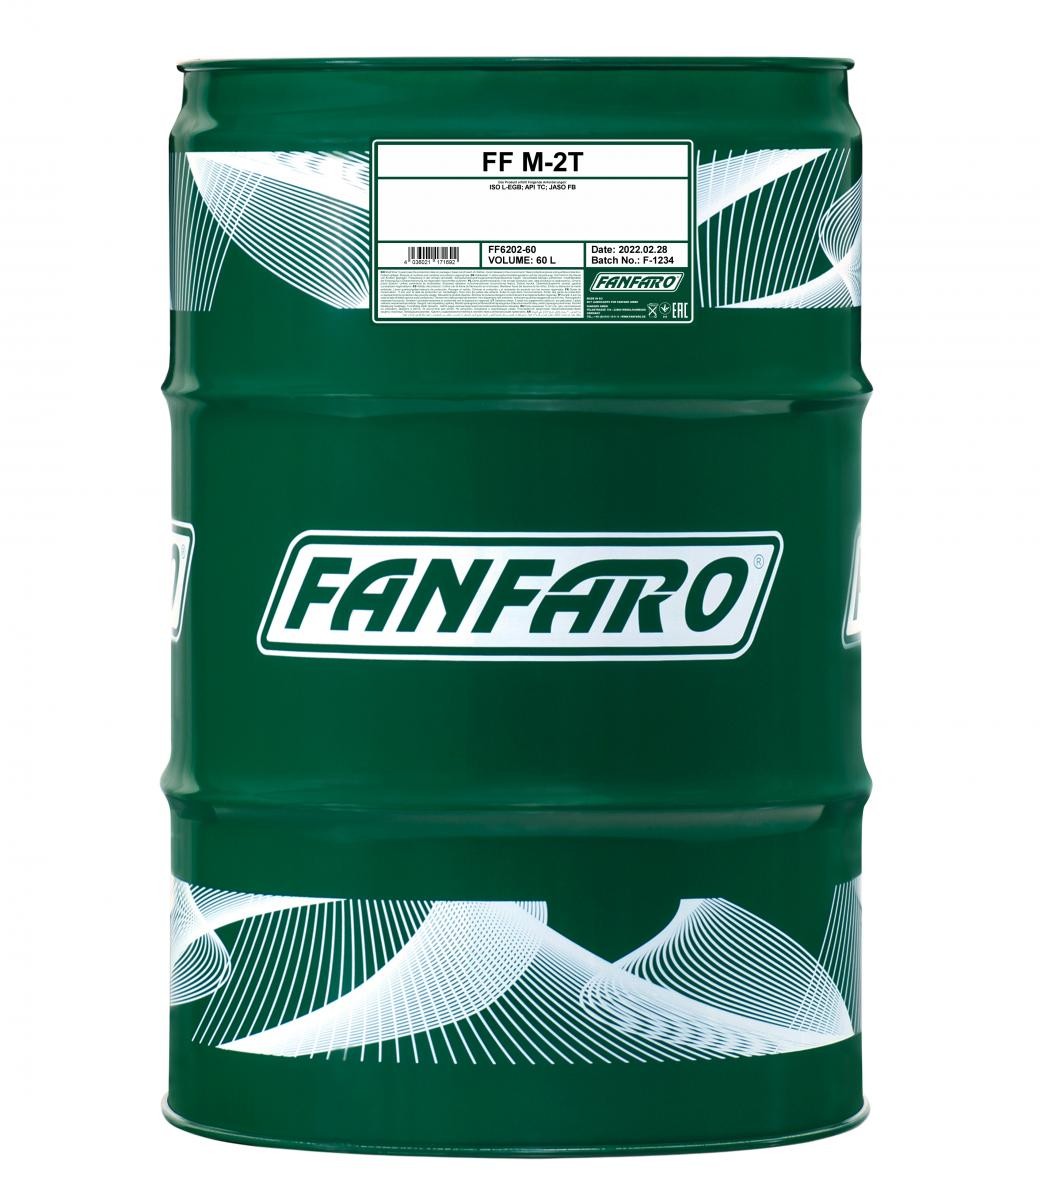 HONDA PA Motoröl 60l, Mineralöl FANFARO M-2T FF6202-60